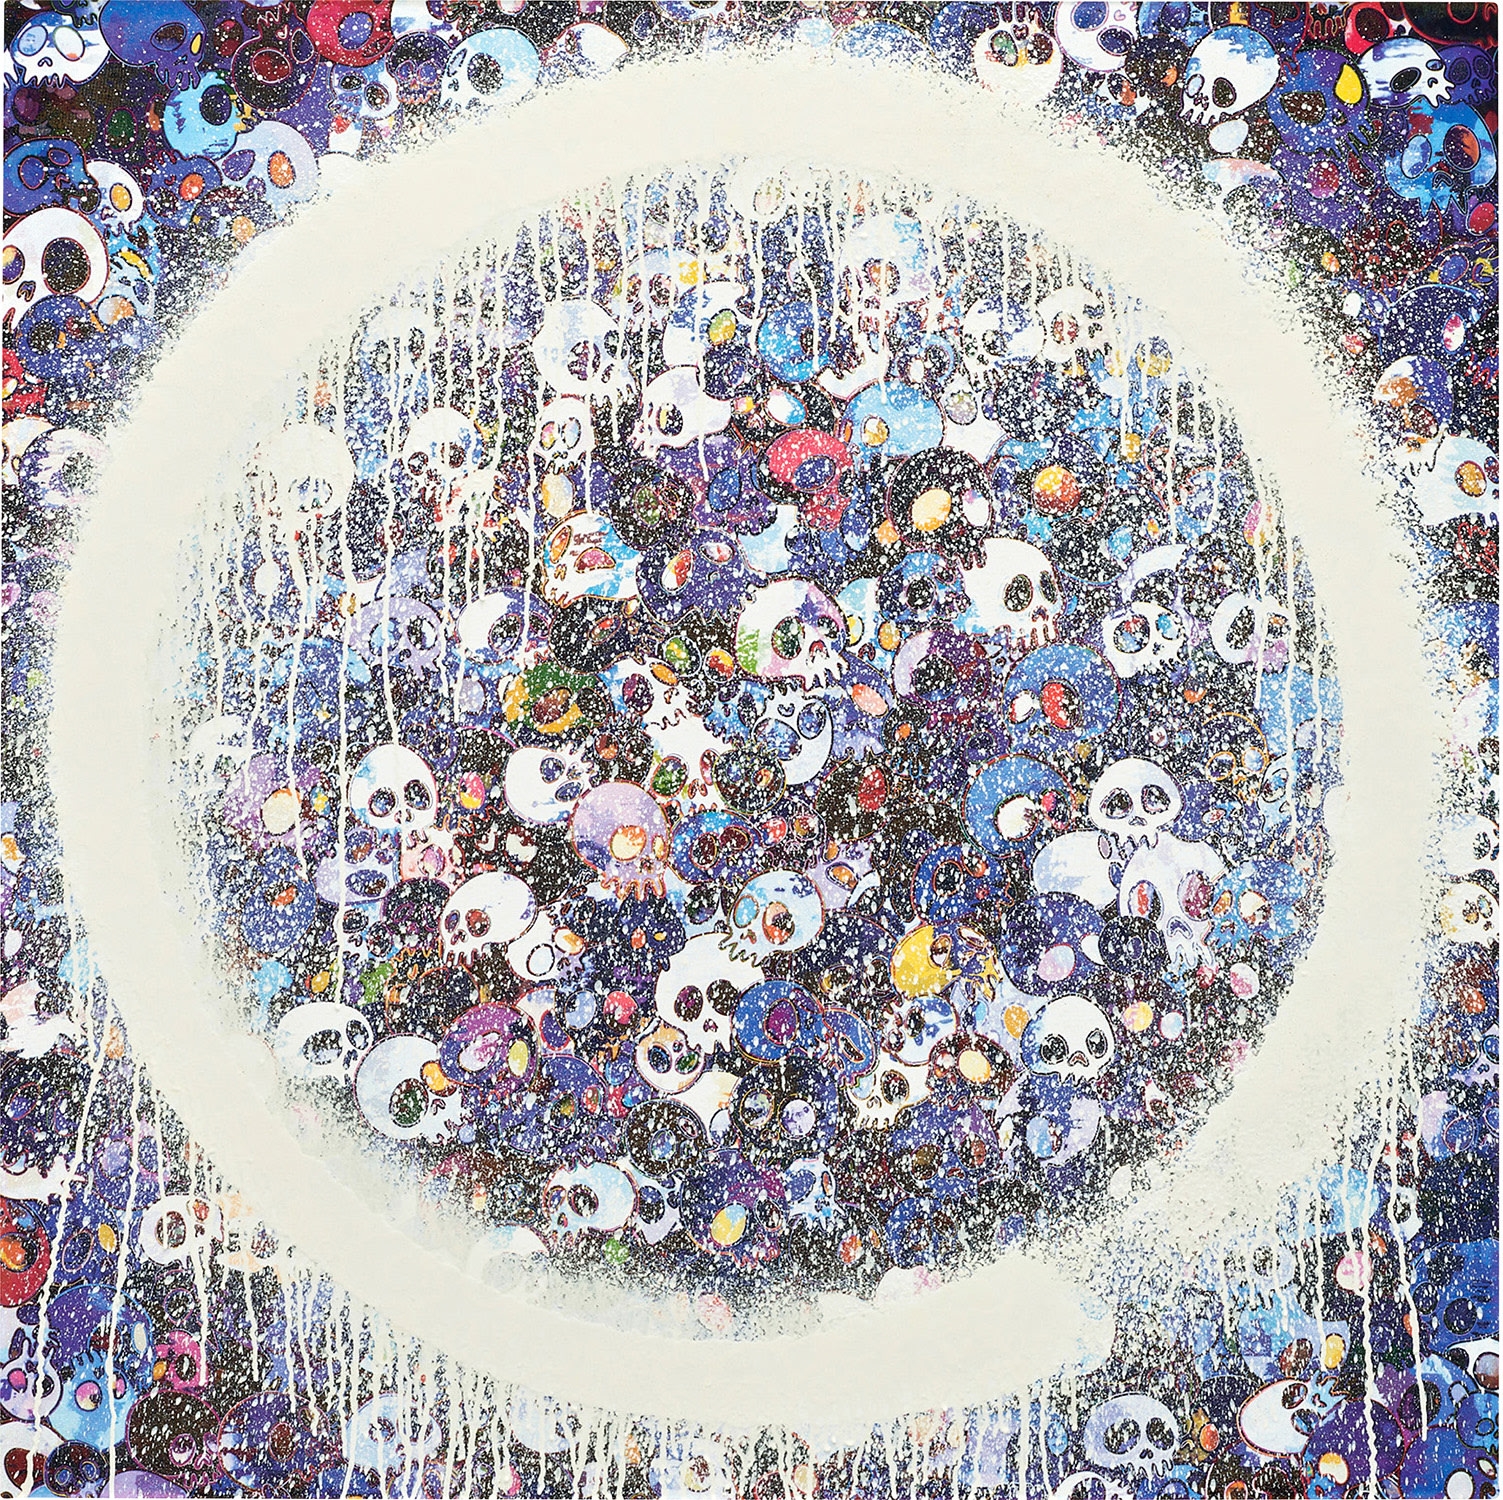 343: TAKASHI MURAKAMI, Monogram Multicolore - White < Modern Art